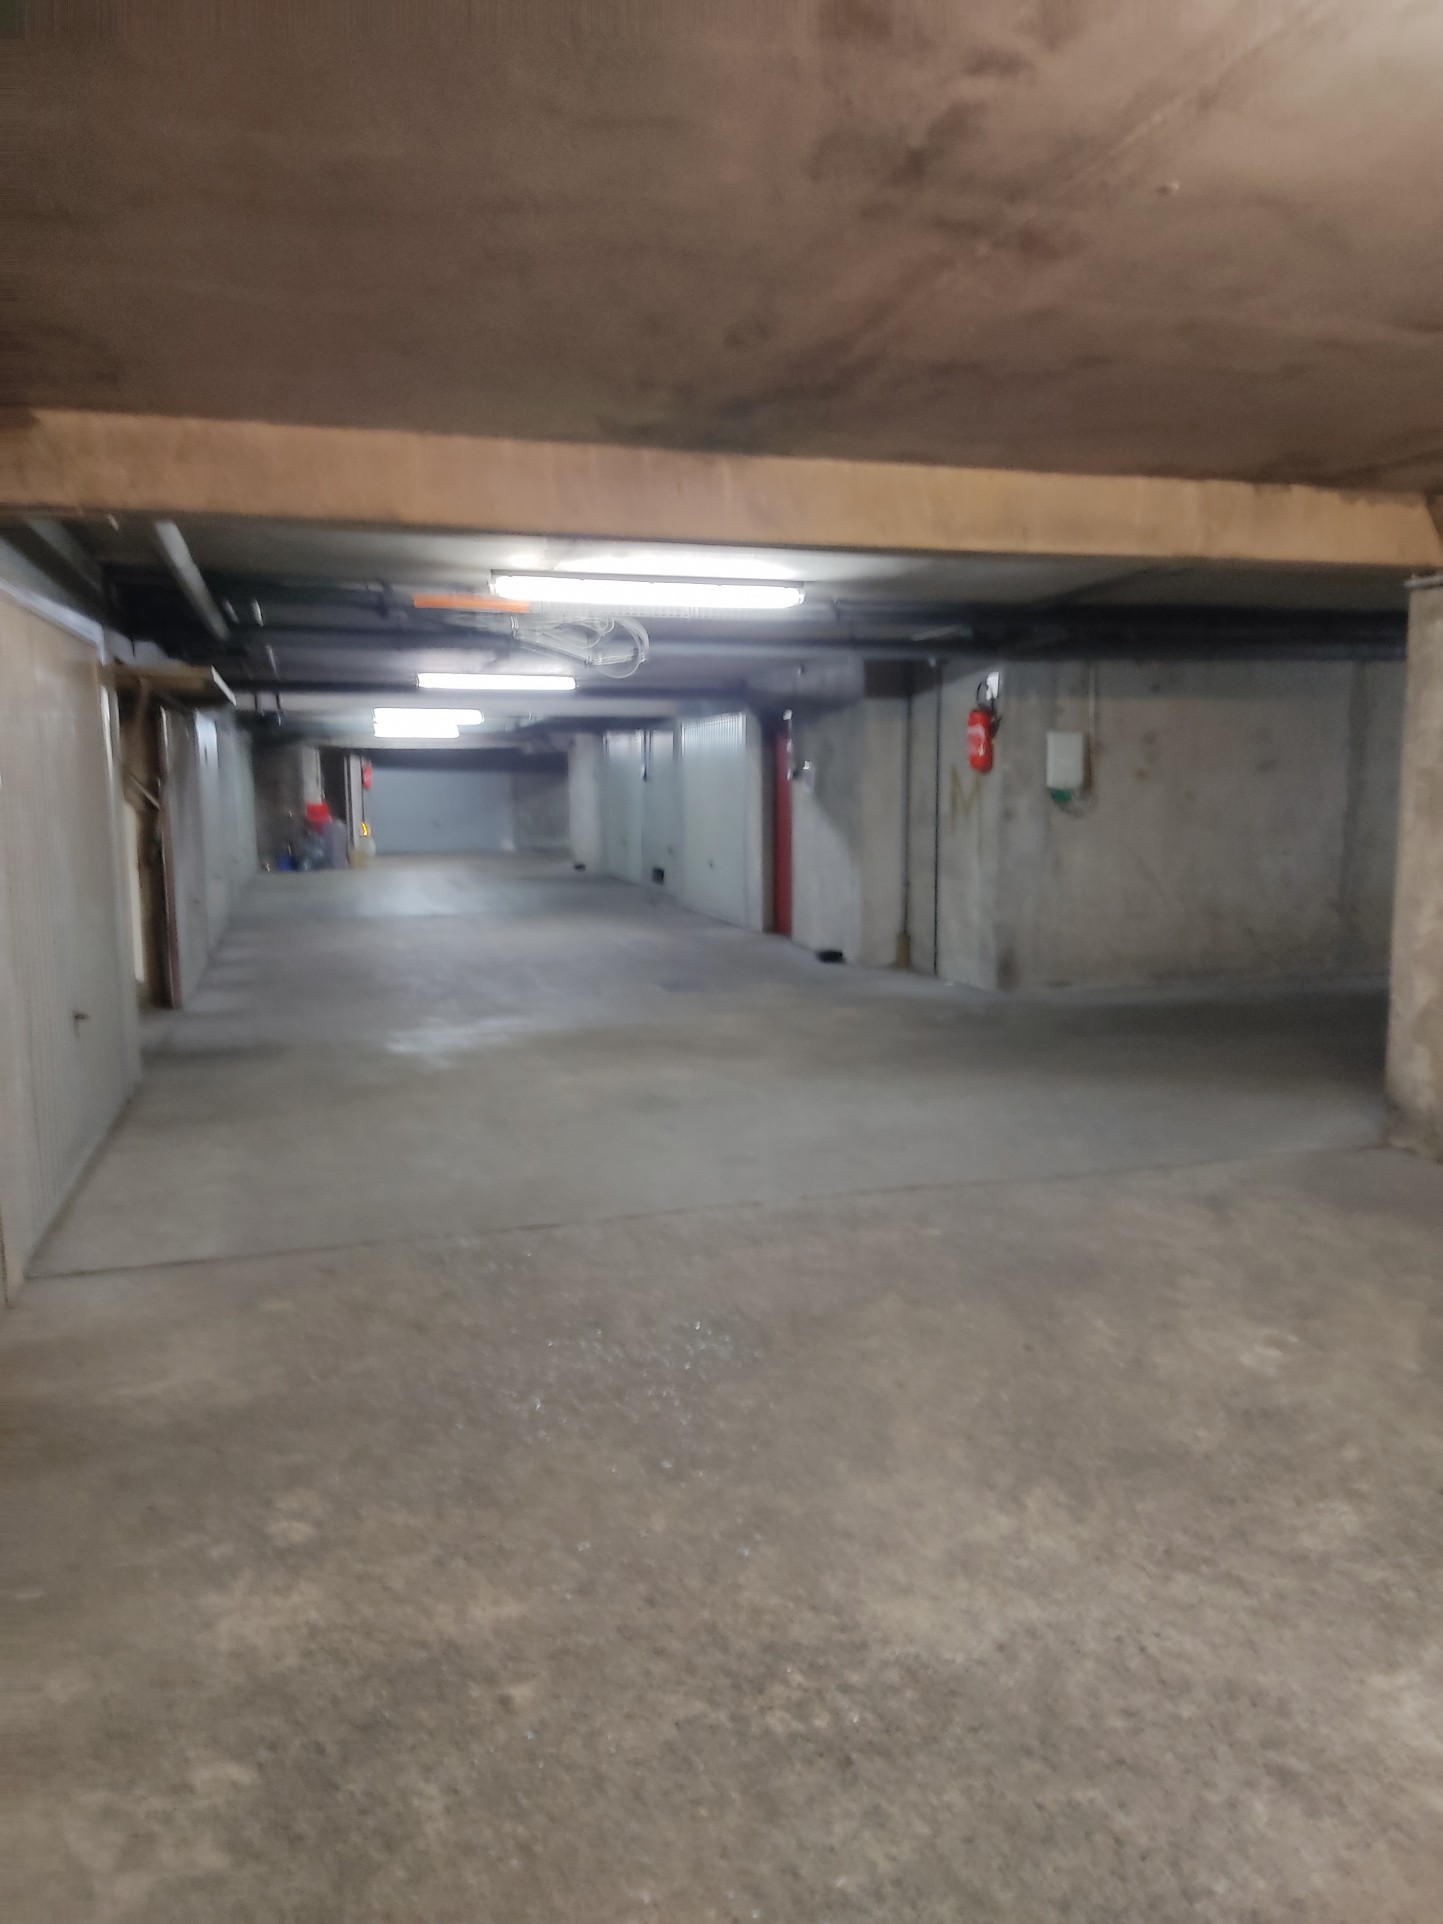 Location Garage / Parking à Carcassonne 0 pièce